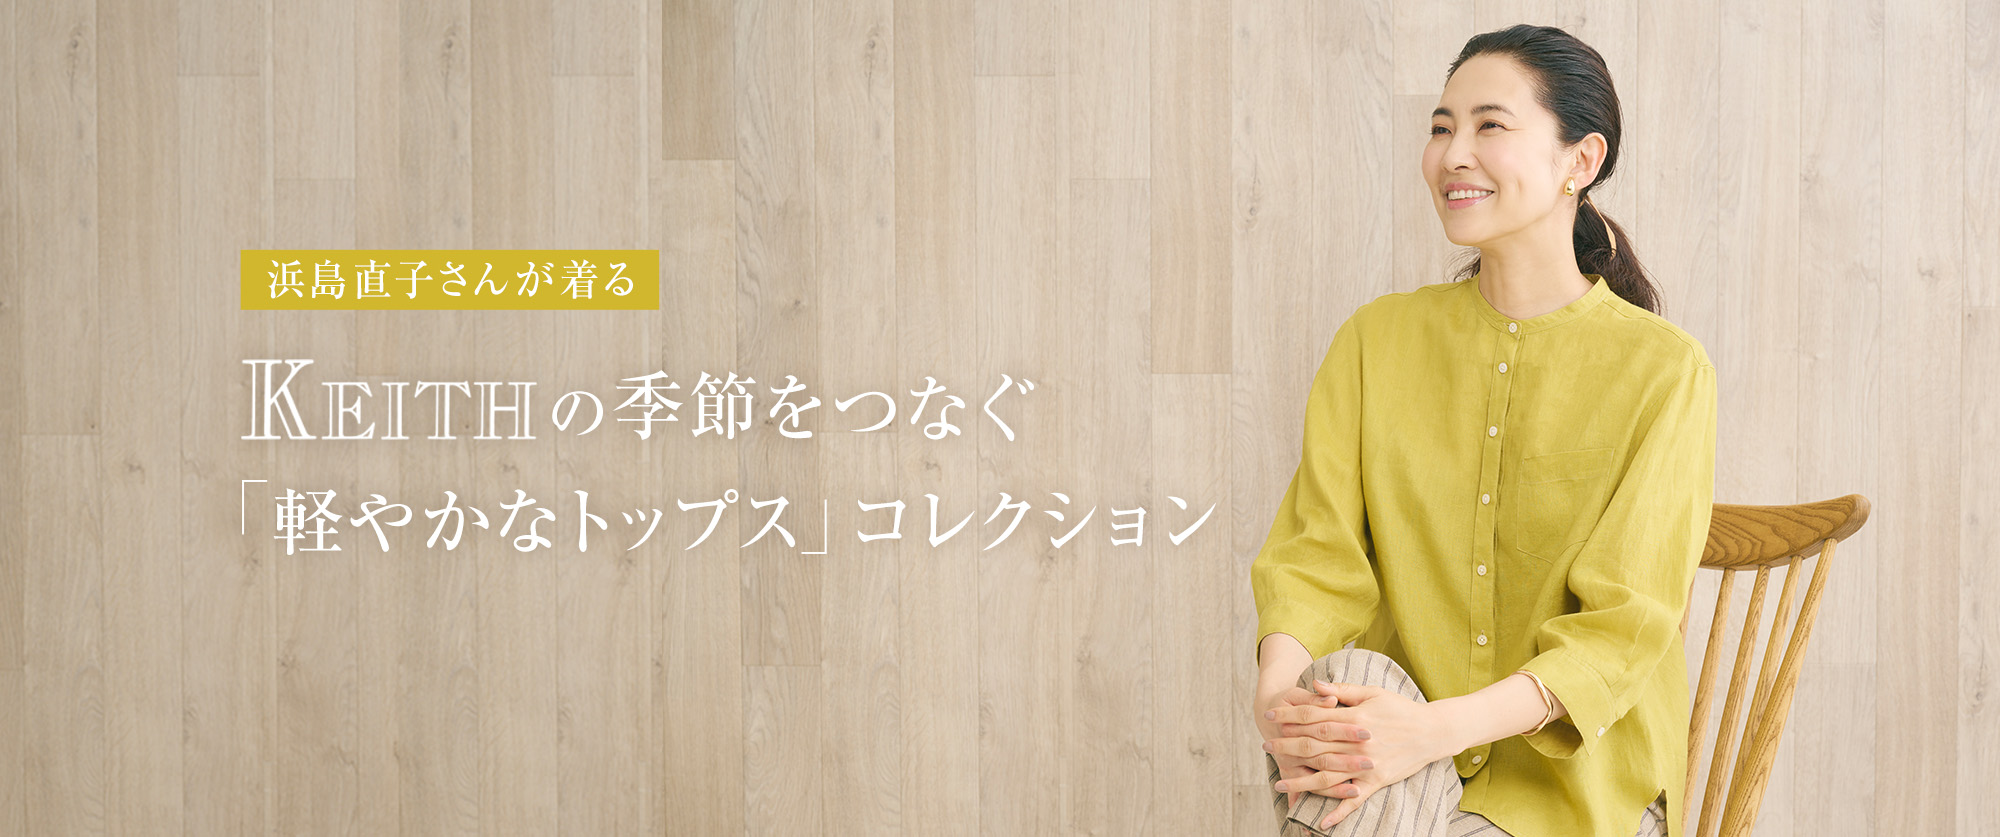 浜島直子さんが着る、KEITHの季節をつなぐ「軽やかなトップス」コレクション